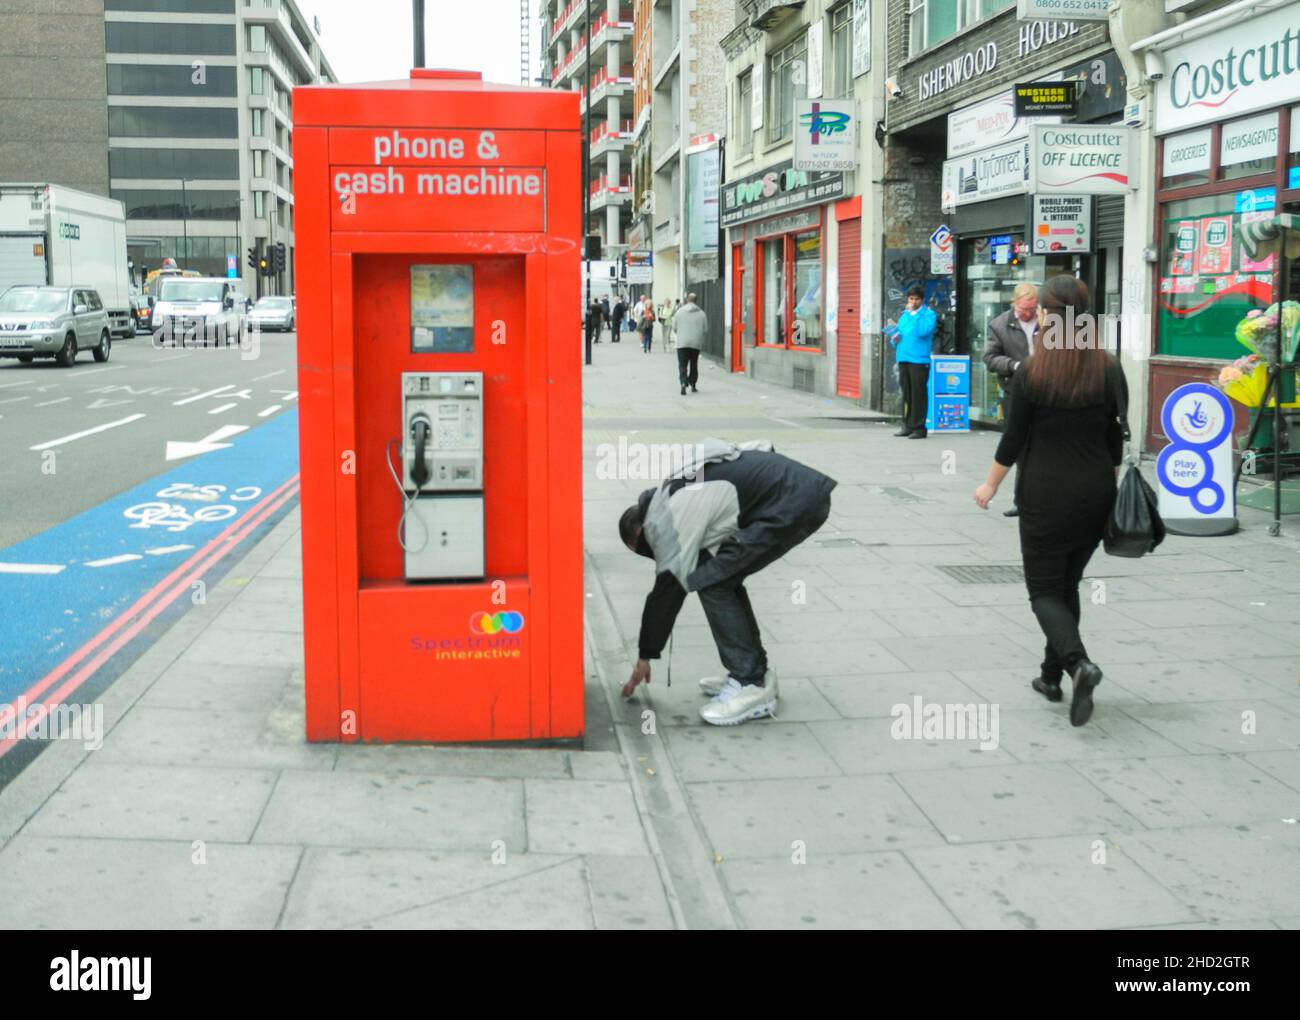 Un homme s'attèle à prendre une cigarette, mais sur Whitechapel High Street, Whitechapel, Londres, Angleterre, Royaume-Uni Banque D'Images